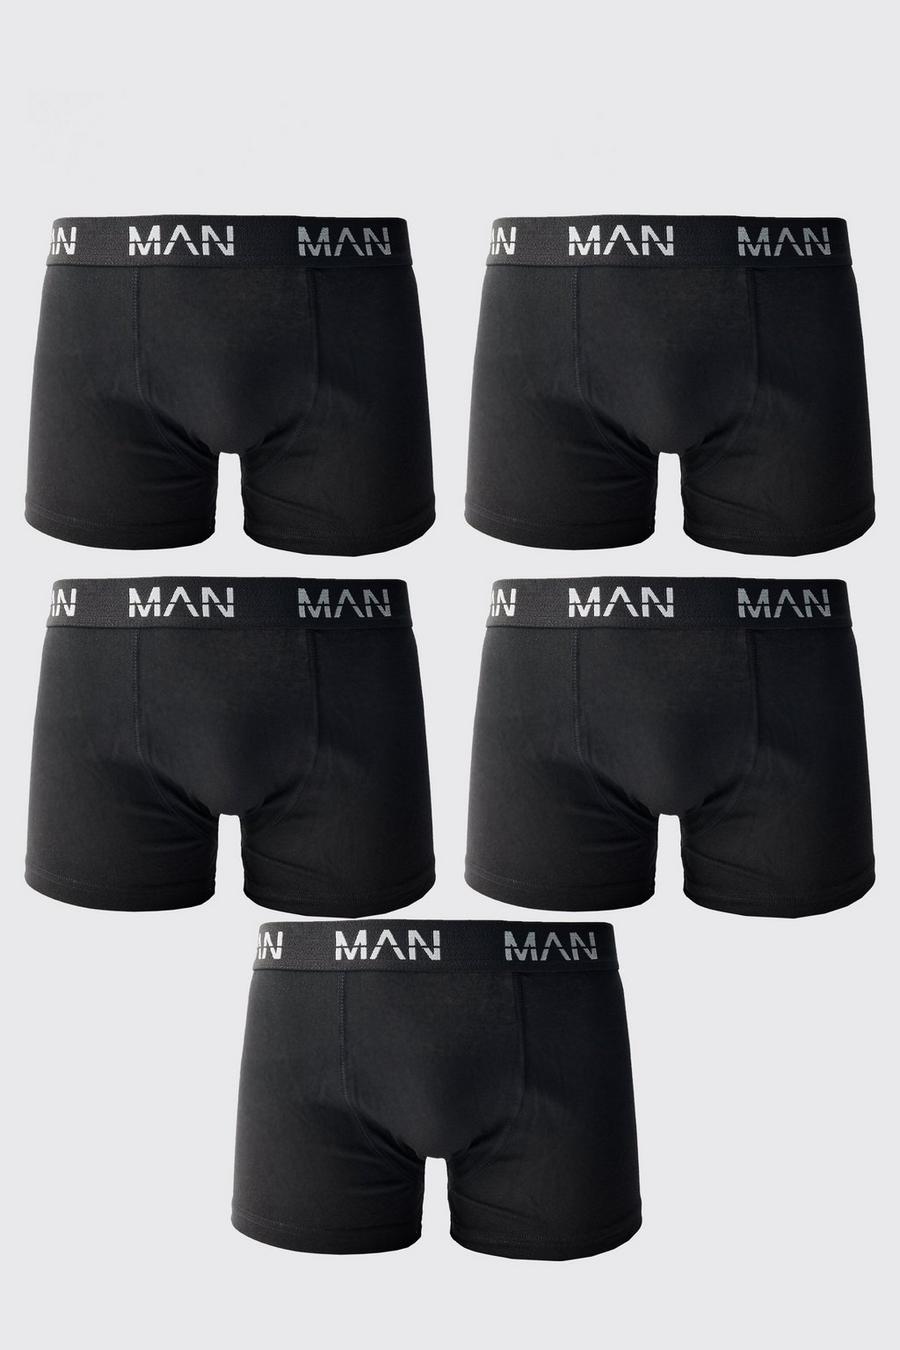 5er-Pack Man Boxershorts, Black